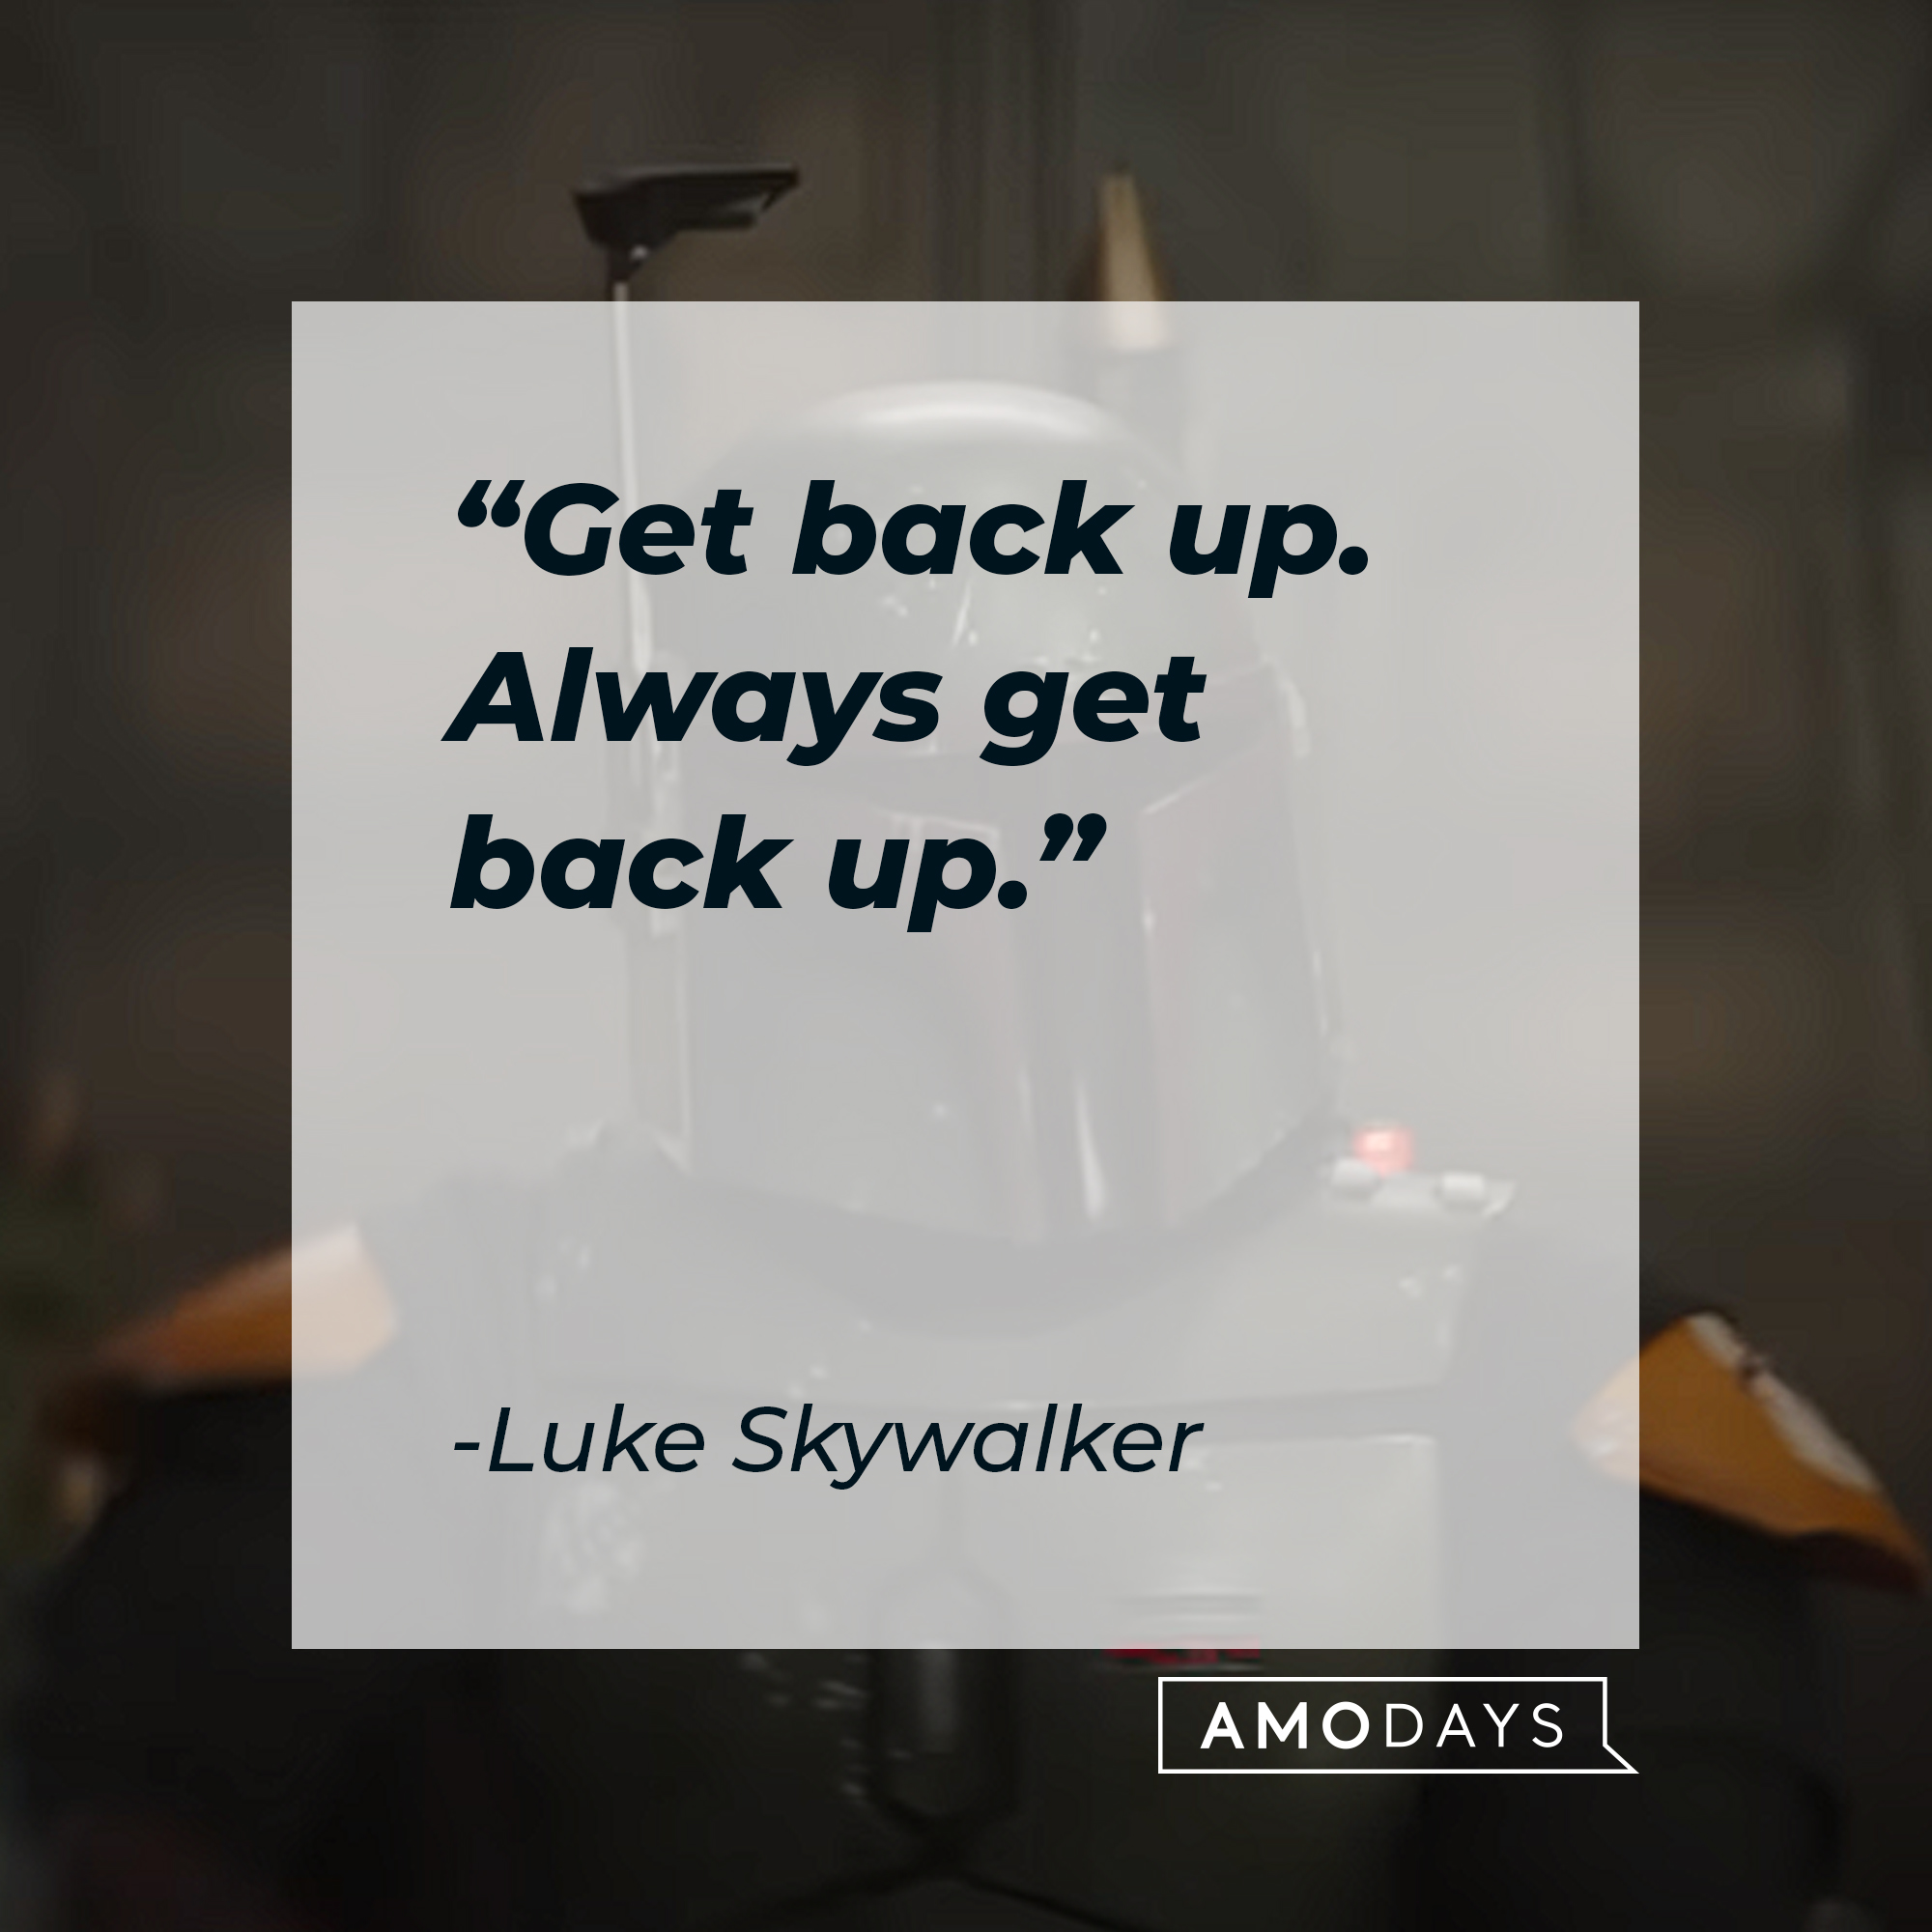 Luke Skywalker's quote: "Get back up. Always get back up." | Source: youtube.com/StarWars